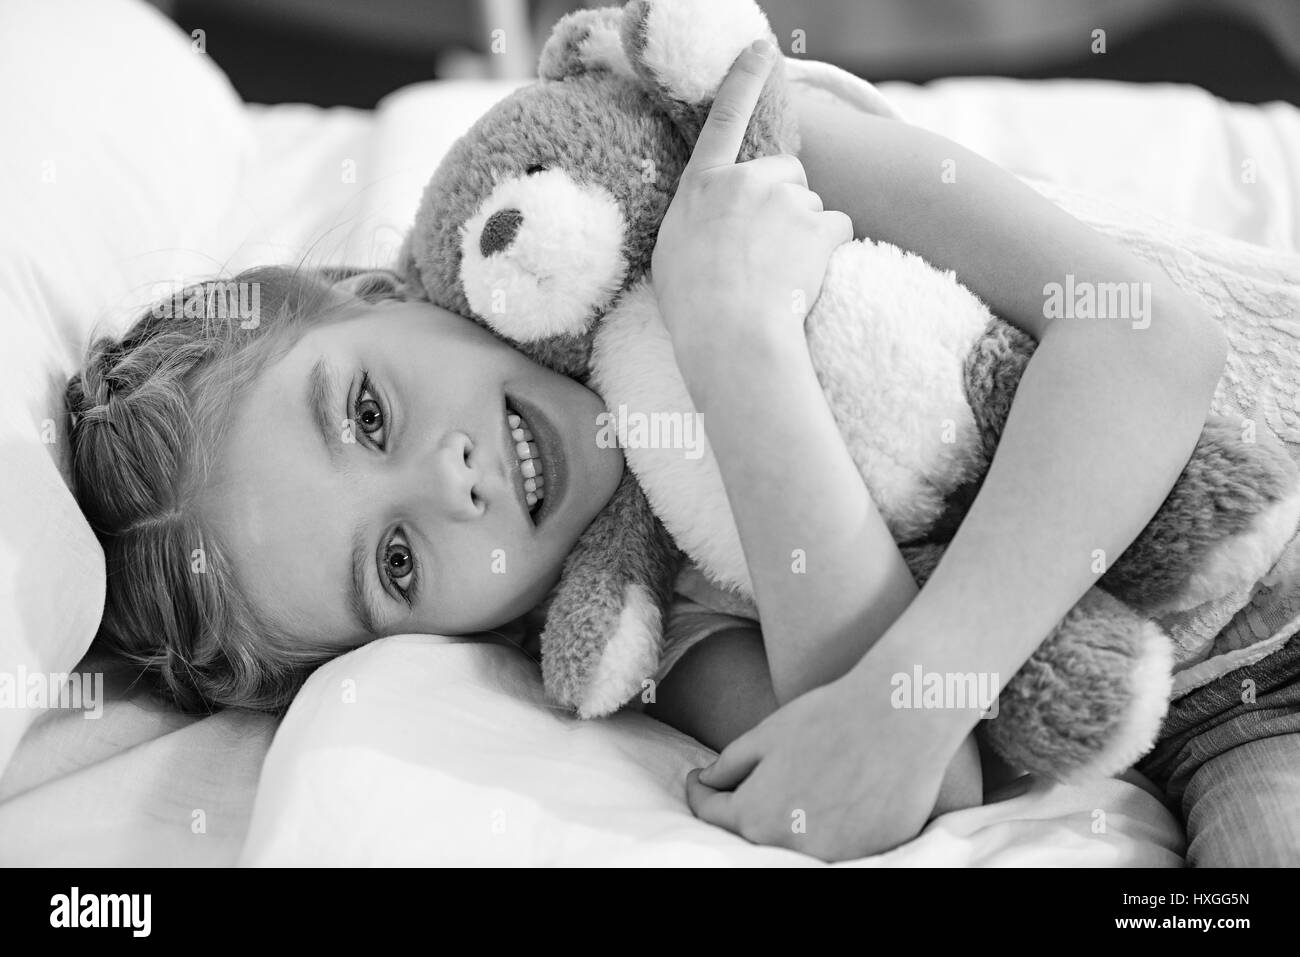 Smiling little girl avec ours couché dans lit d'hôpital, photo en noir et blanc Banque D'Images